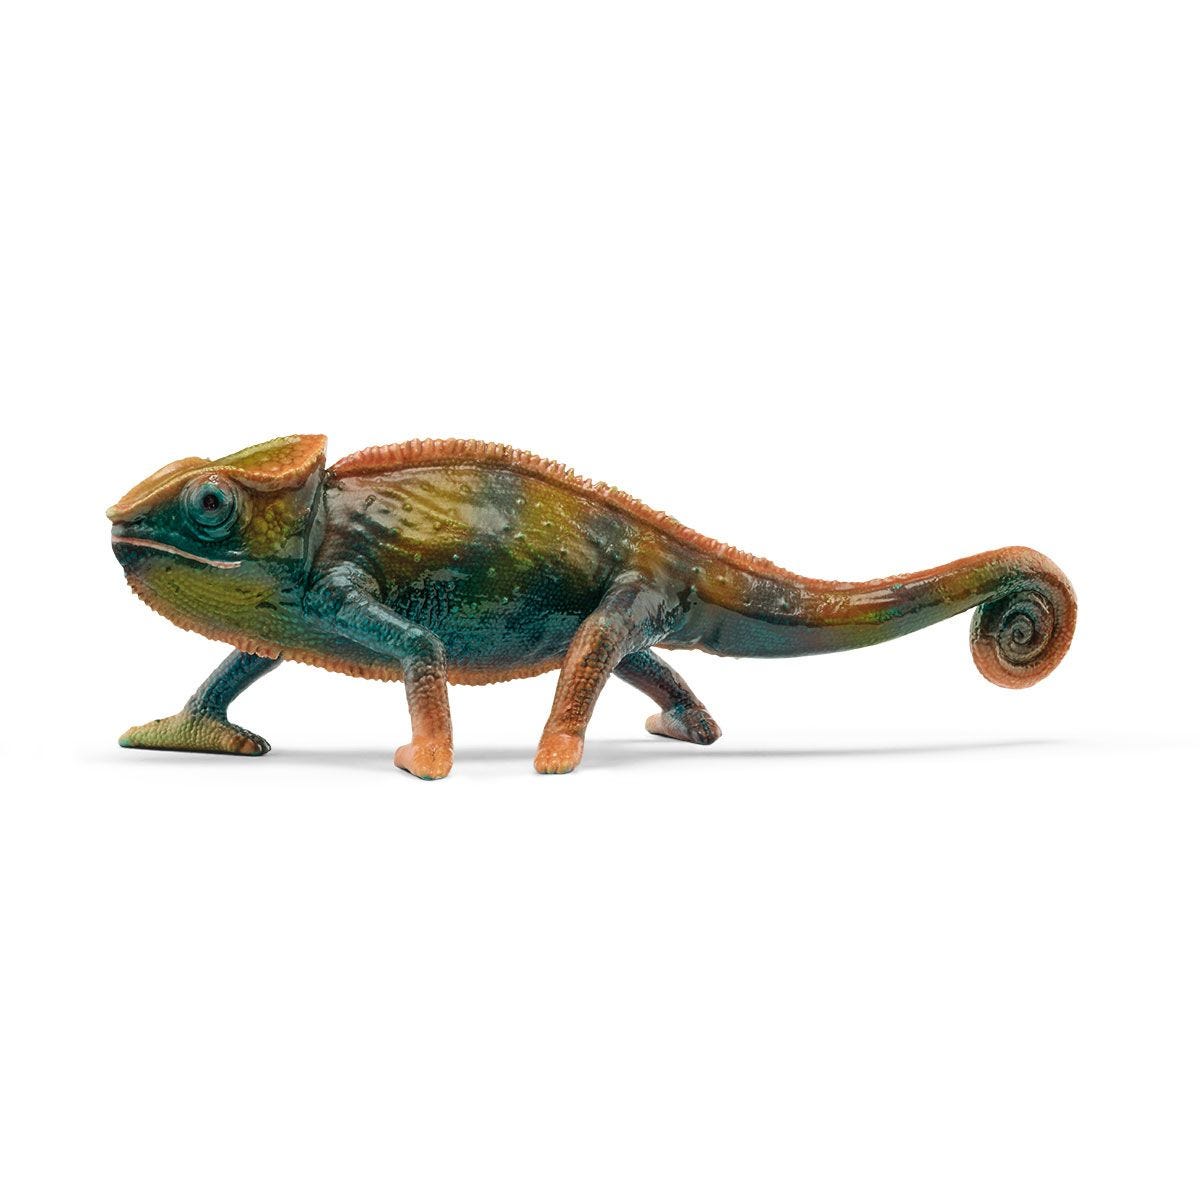 Chameleon Figurine by Schleich # 14858